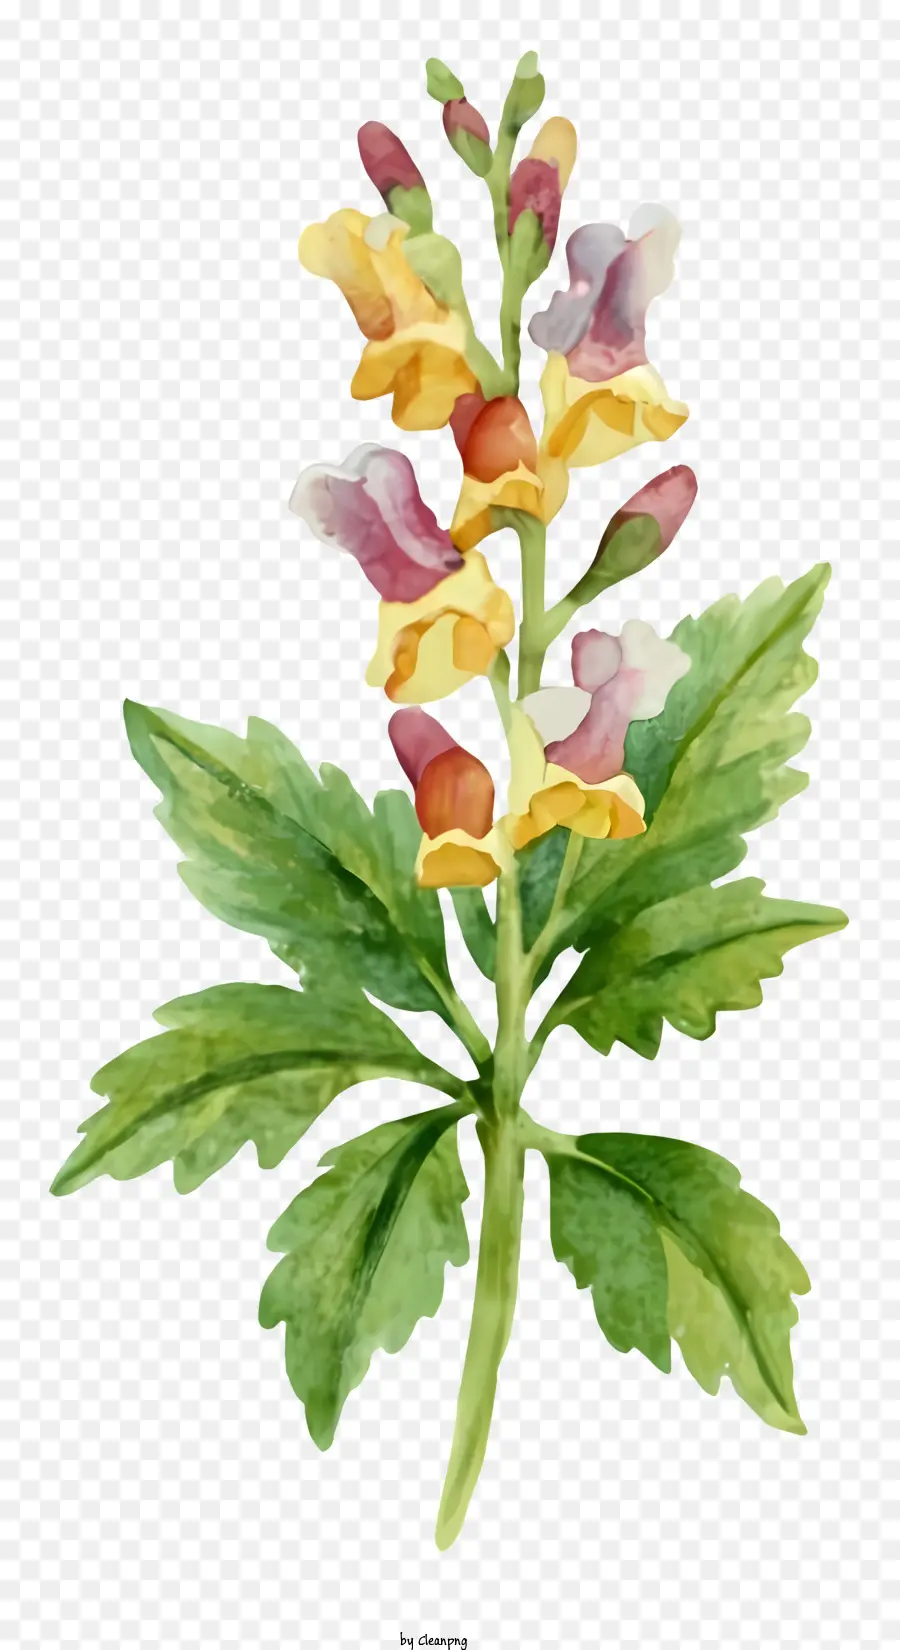 Aquarellmalerei gelbe und rot Blumengrün Stiel Volle Blütenblätter offen - Aquarellmalerei einer blühenden zarten Blume